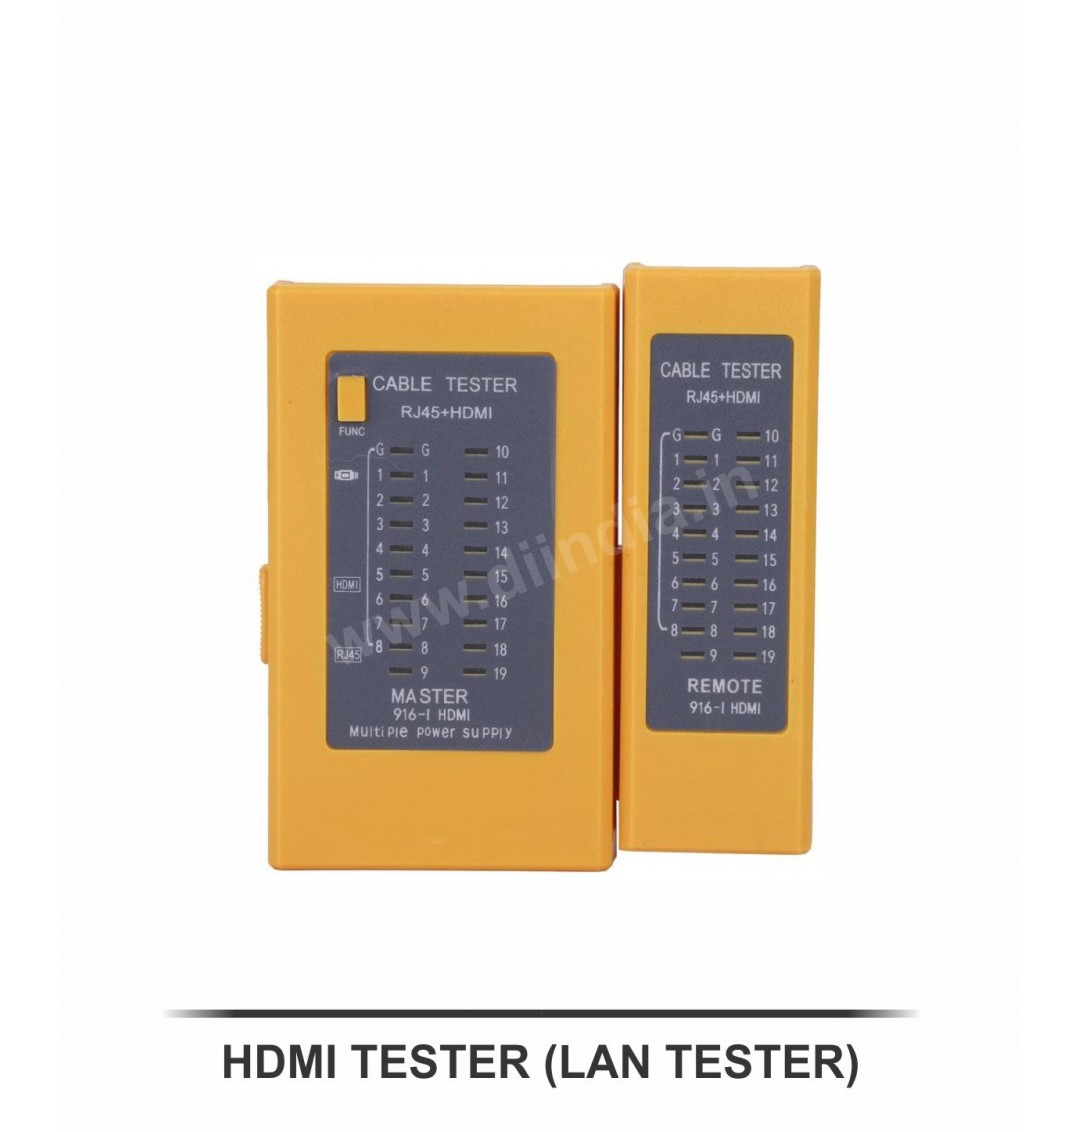 HDMI TESTER (LAN TESTER)